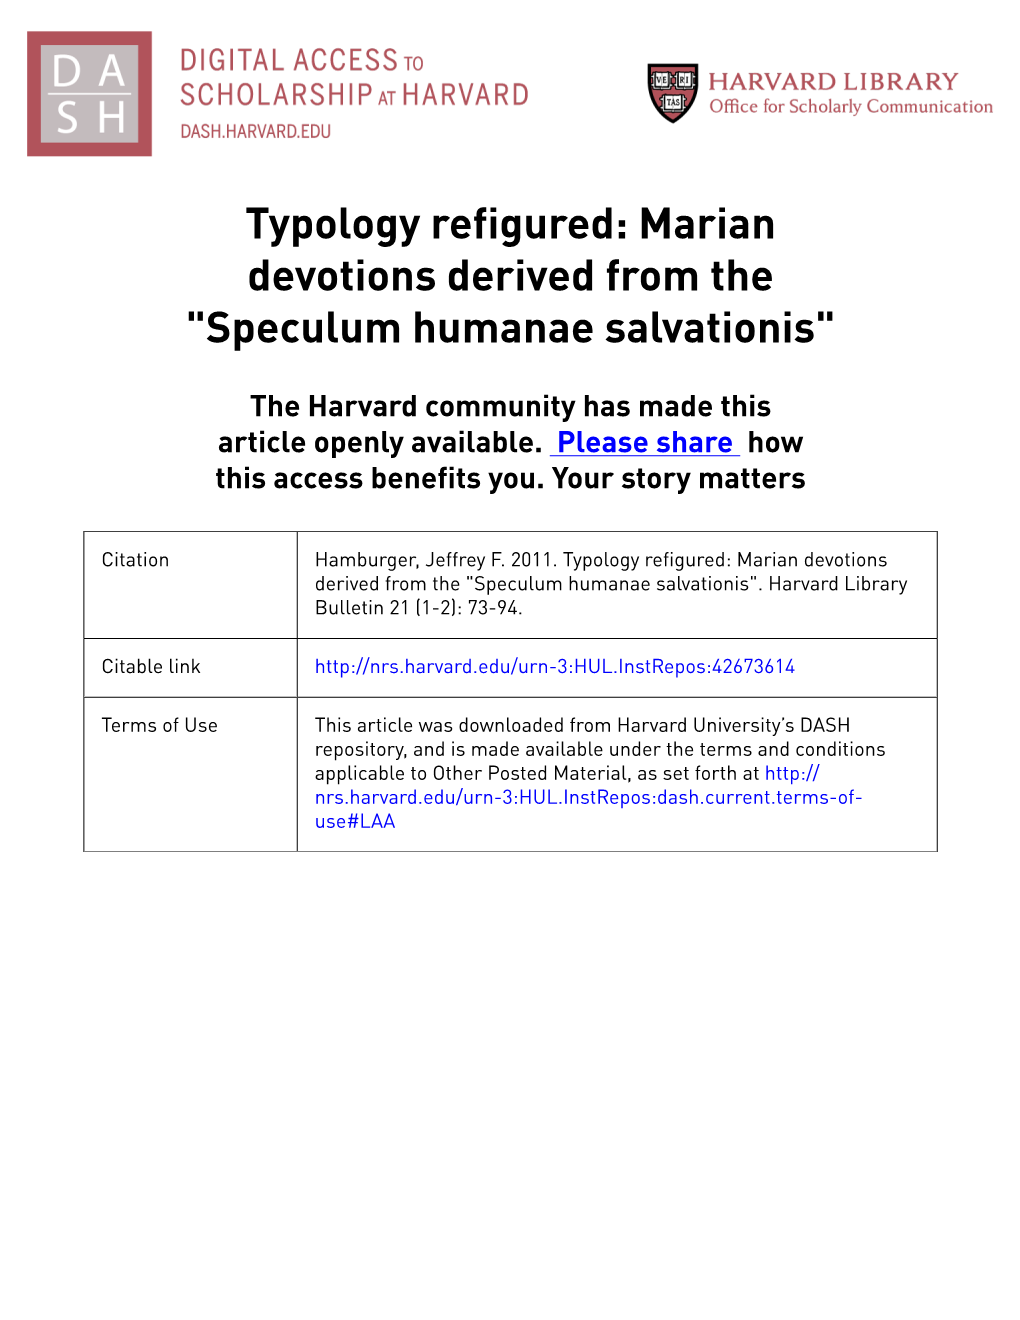 Speculum Humanae Salvationis"